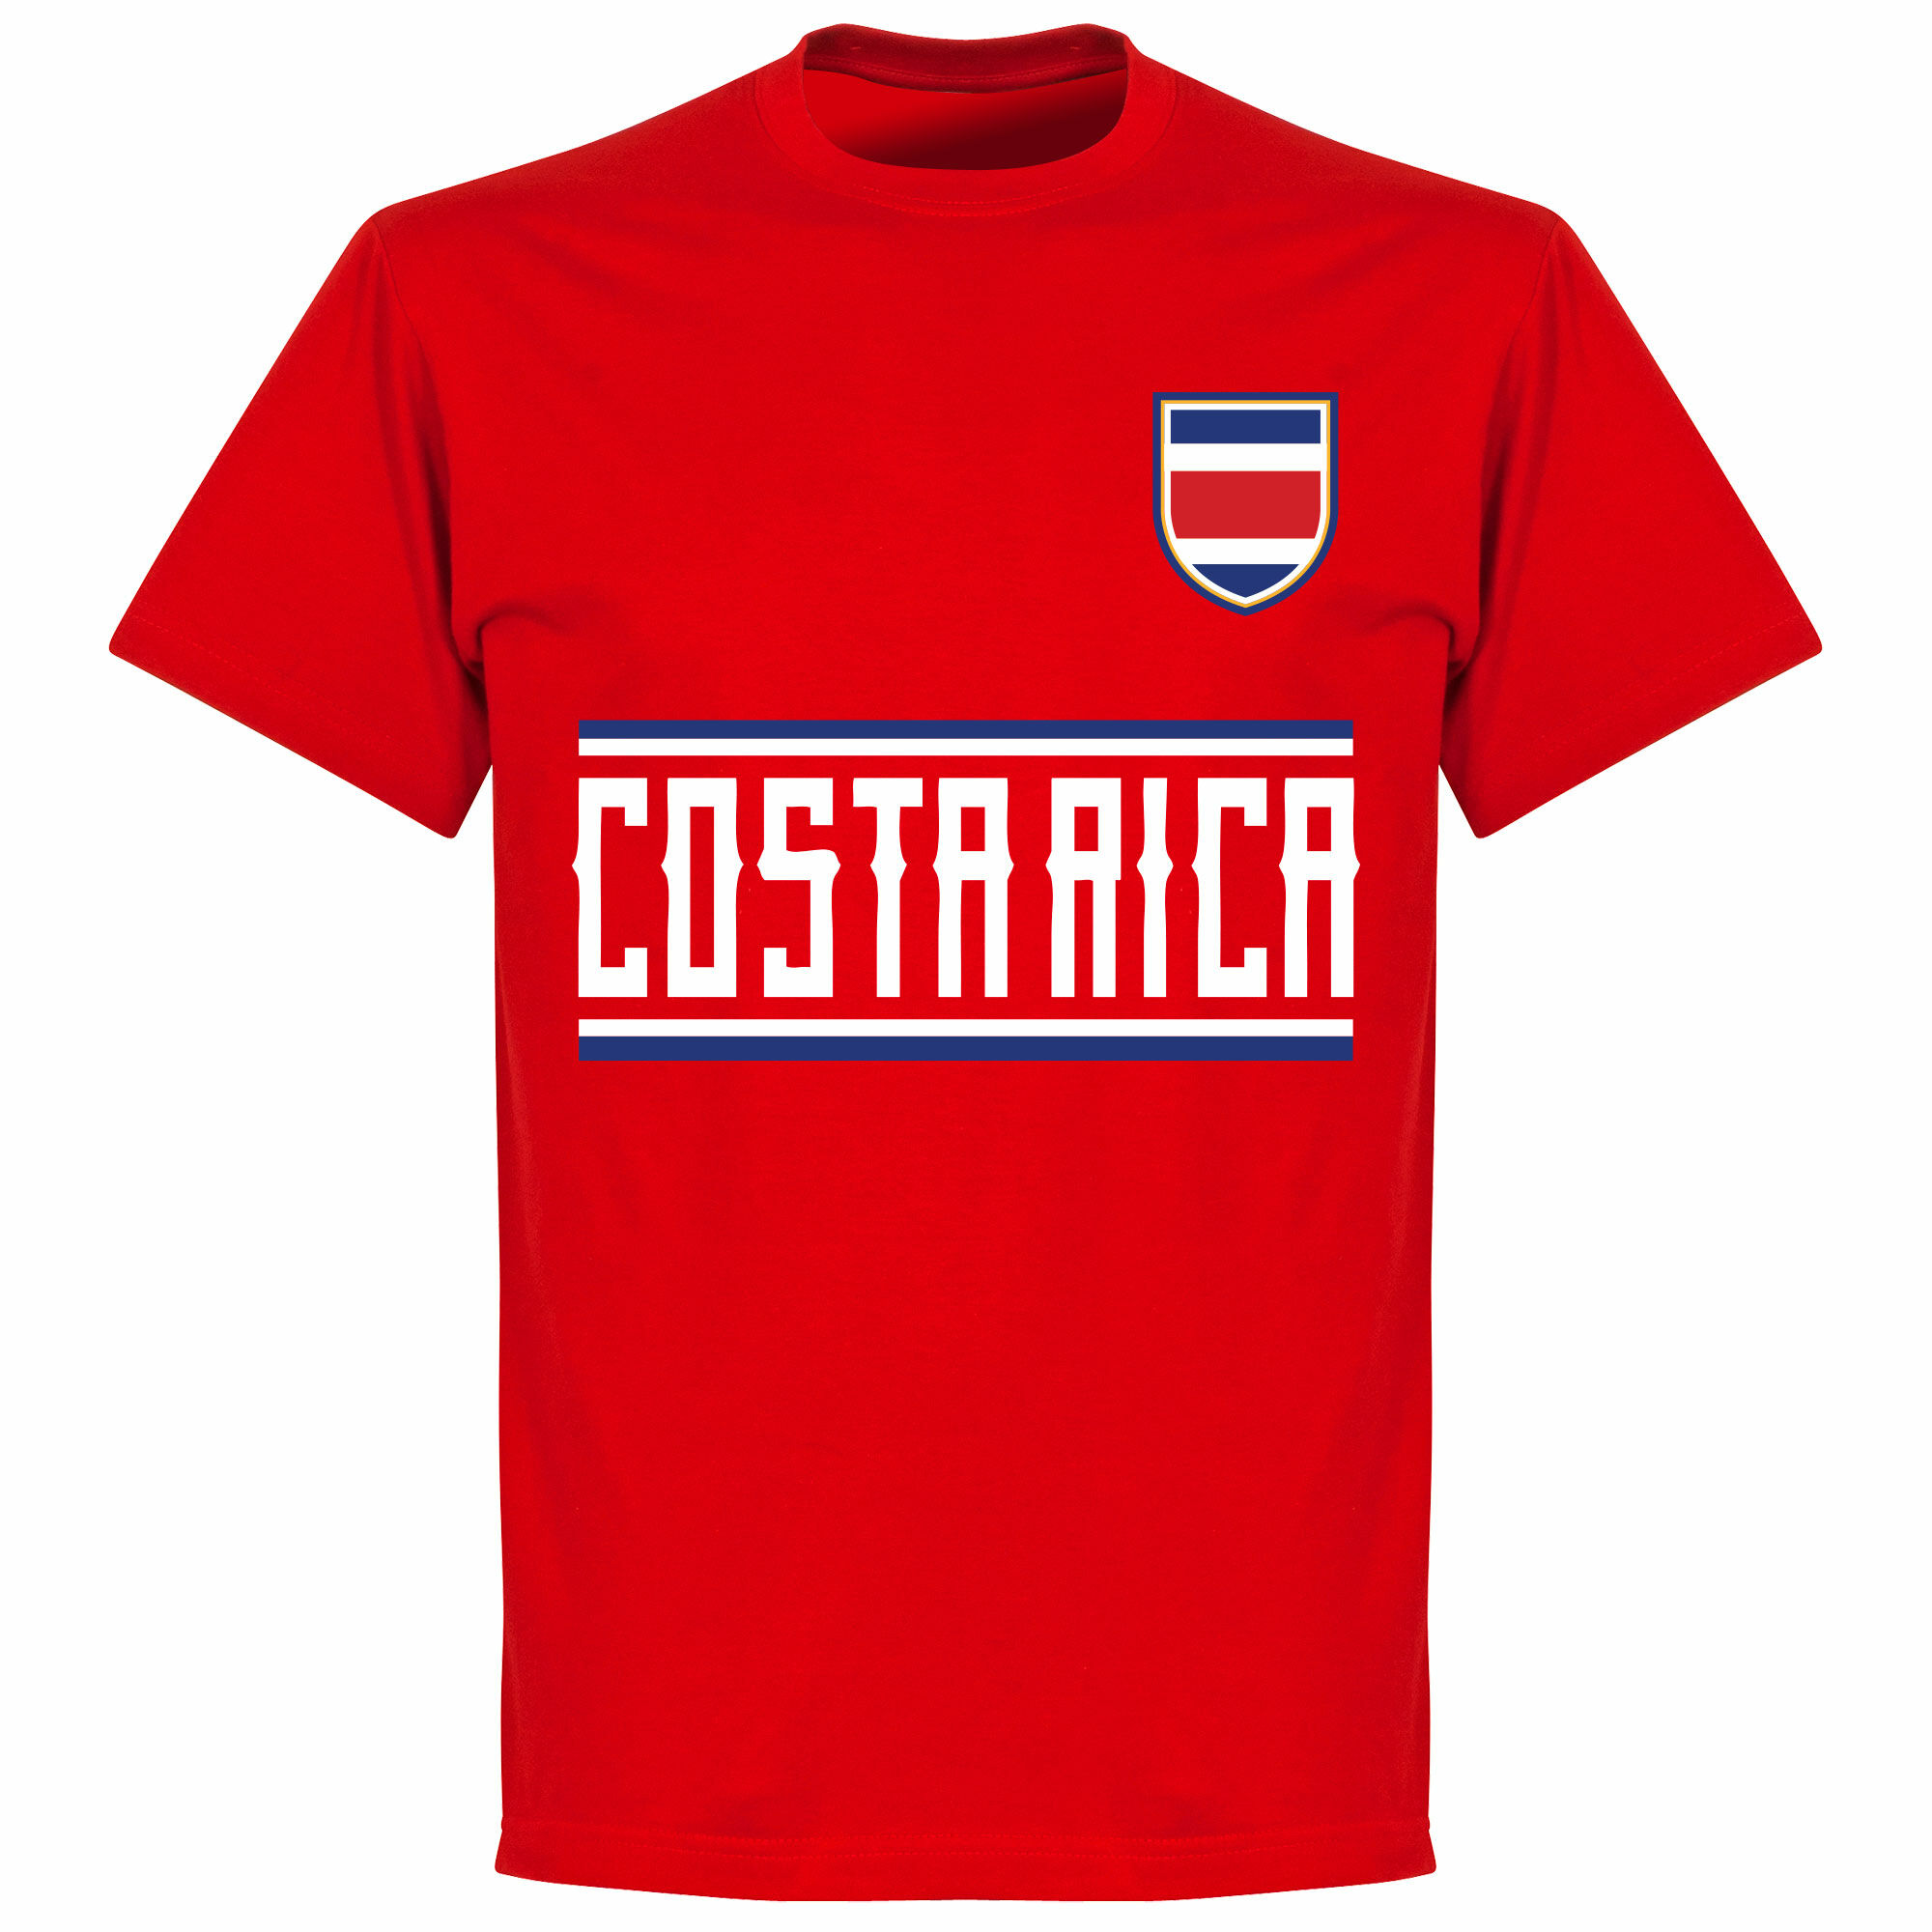 Kostarika - Tričko dětské - červené